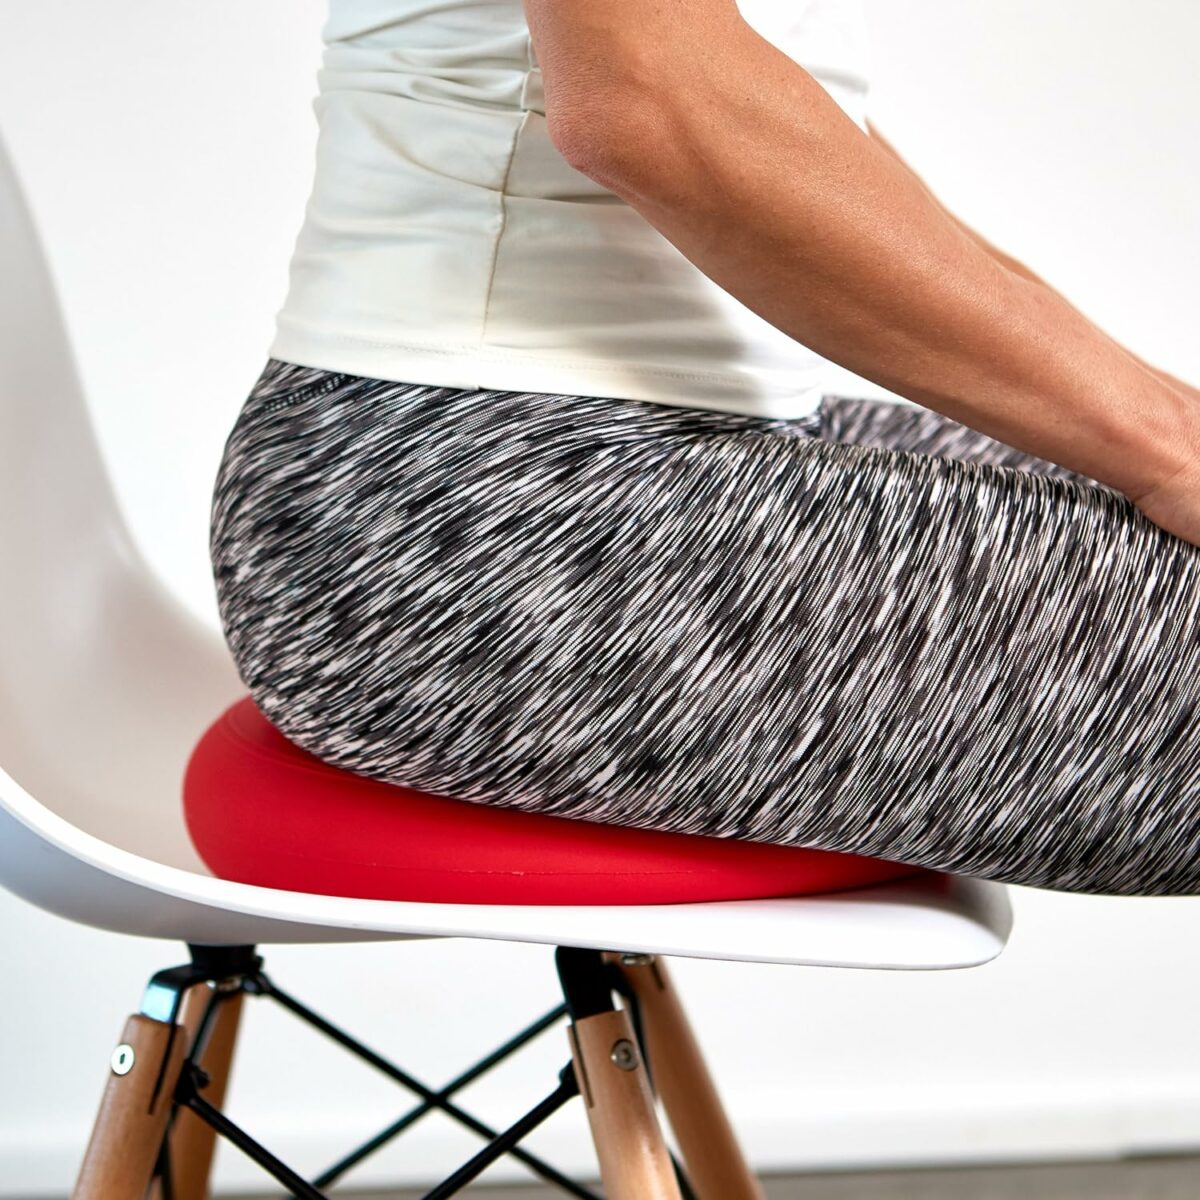 Photographie Amazon. Pour une expérience d'assise améliorée, tournez-vous vers les coussins d'équilibre sans picots, alliant confort et soutien postural